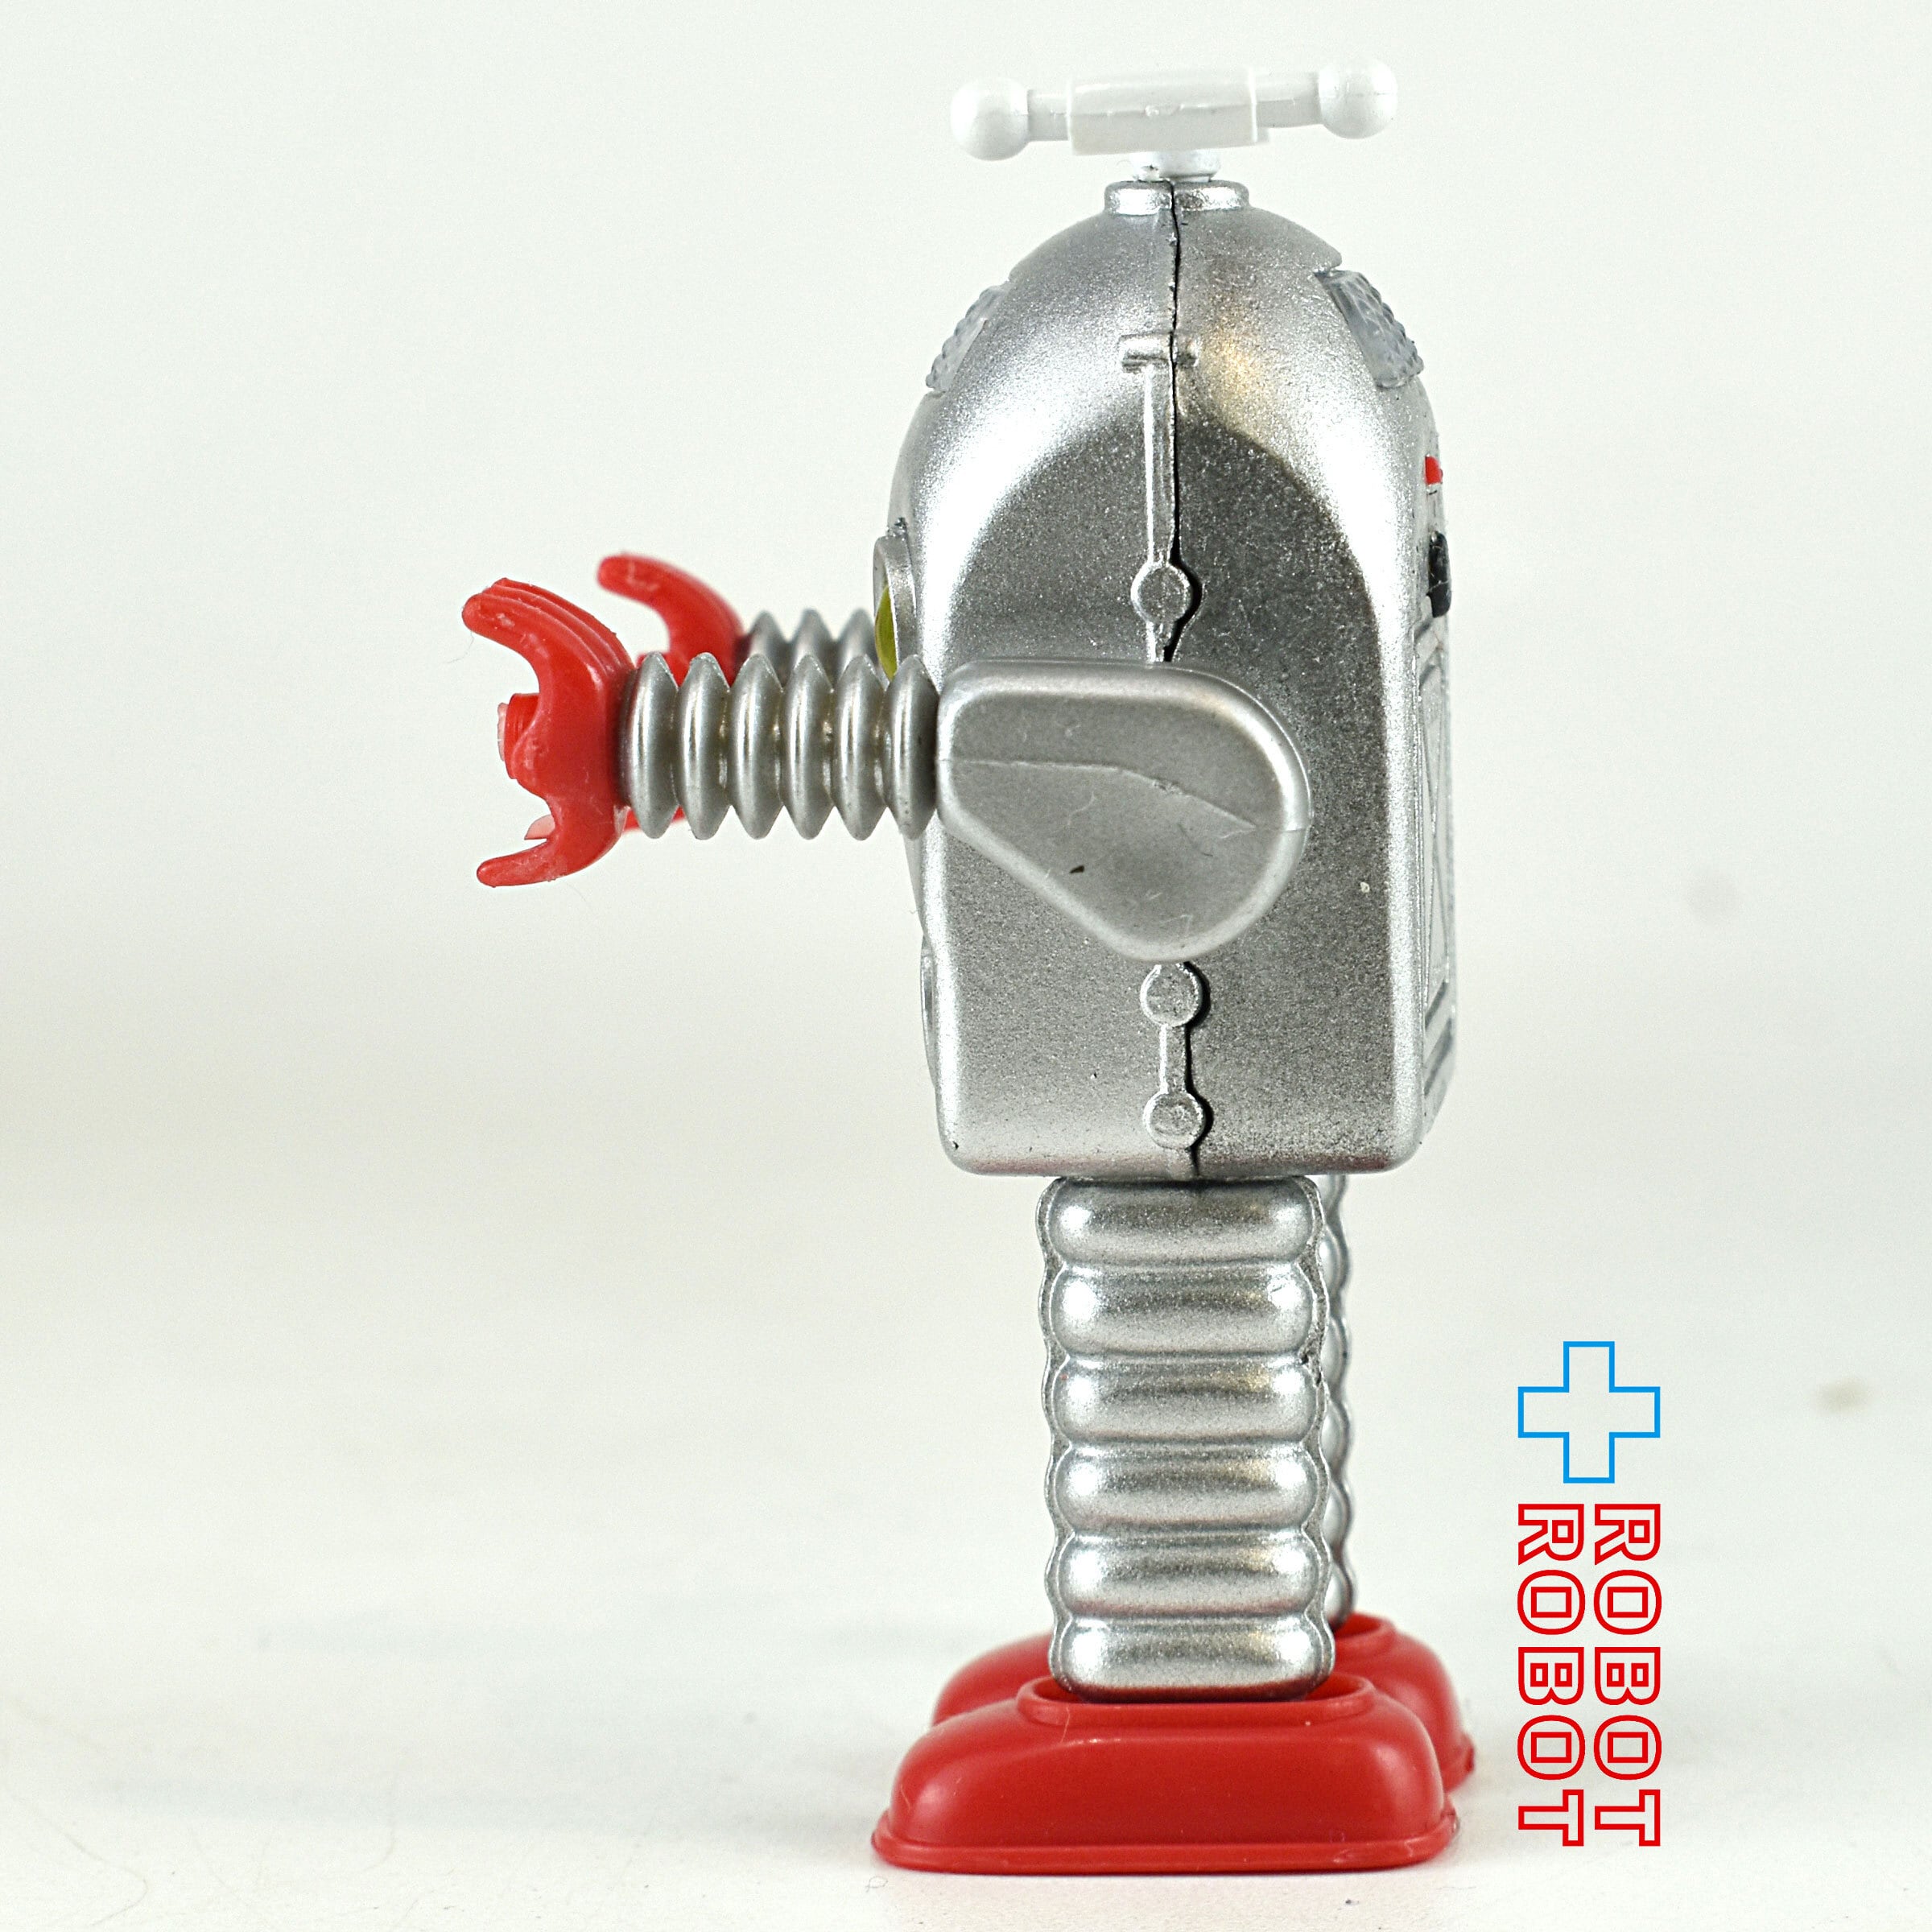 あっぷる むかし懐かしロボット vol.2 サンダーロボット – ROBOTROBOT